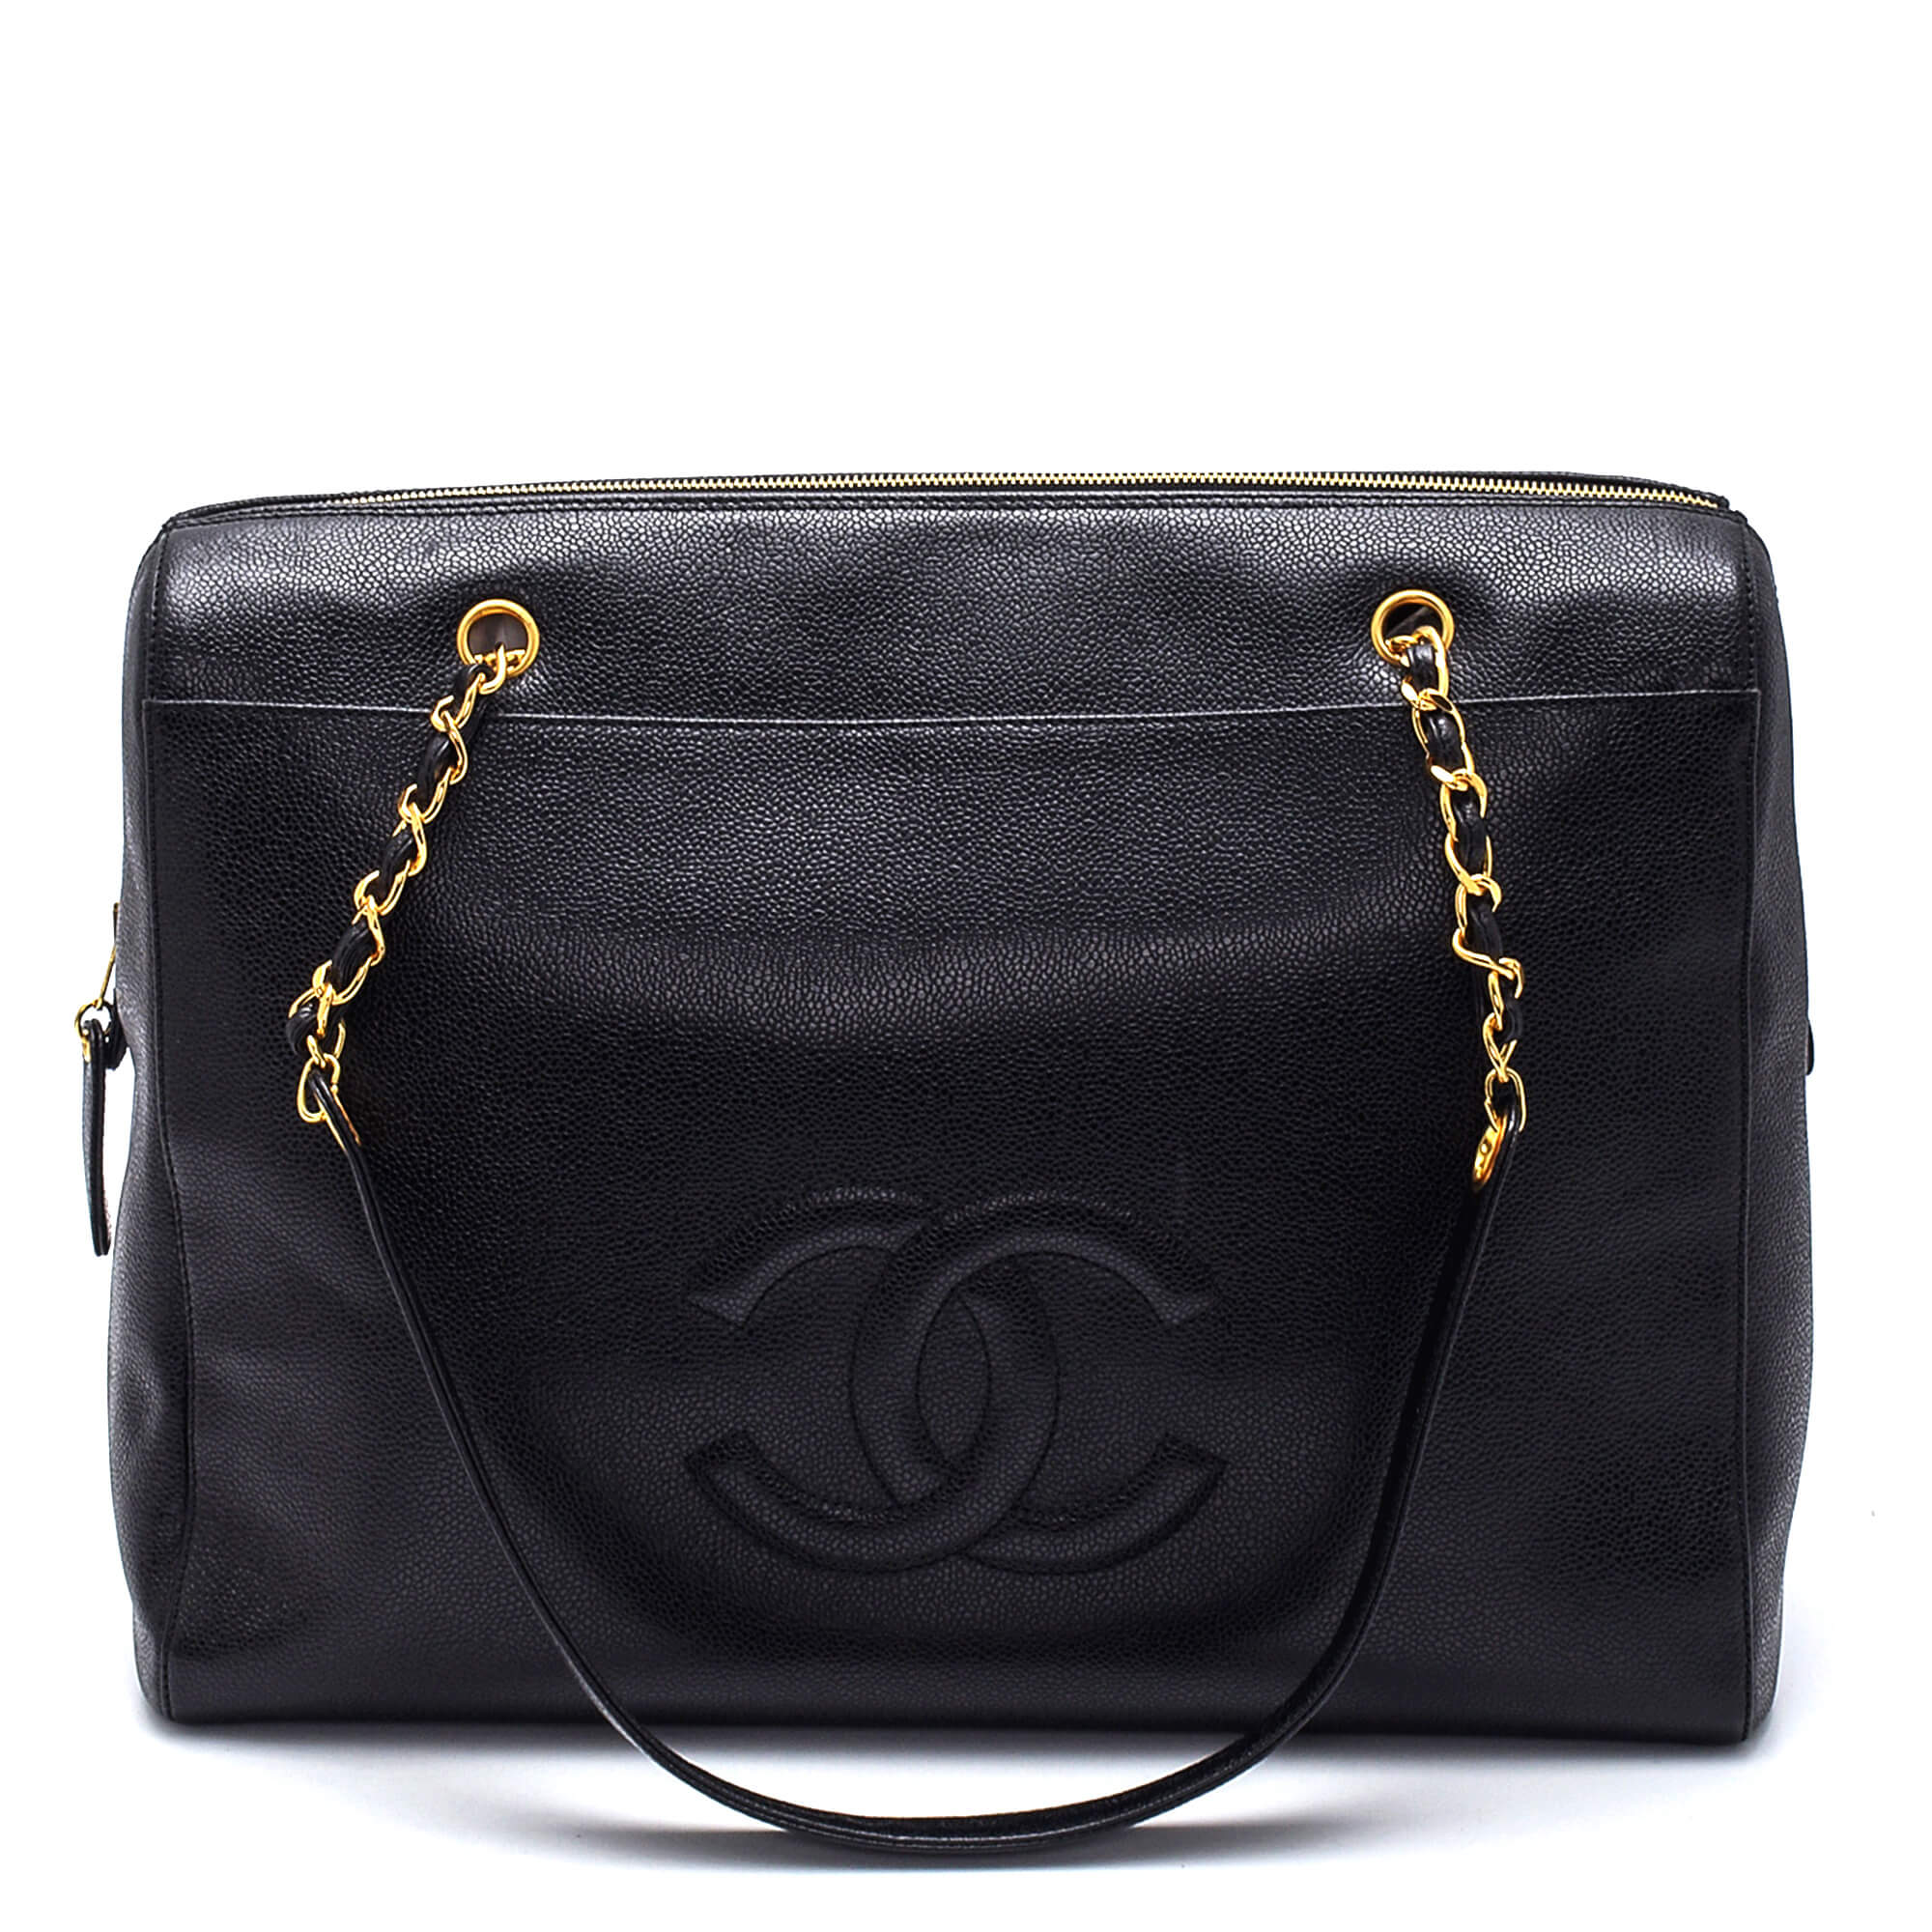 Chanel - Black Caviar Leather CC Large Vintage Shoulder Bag 